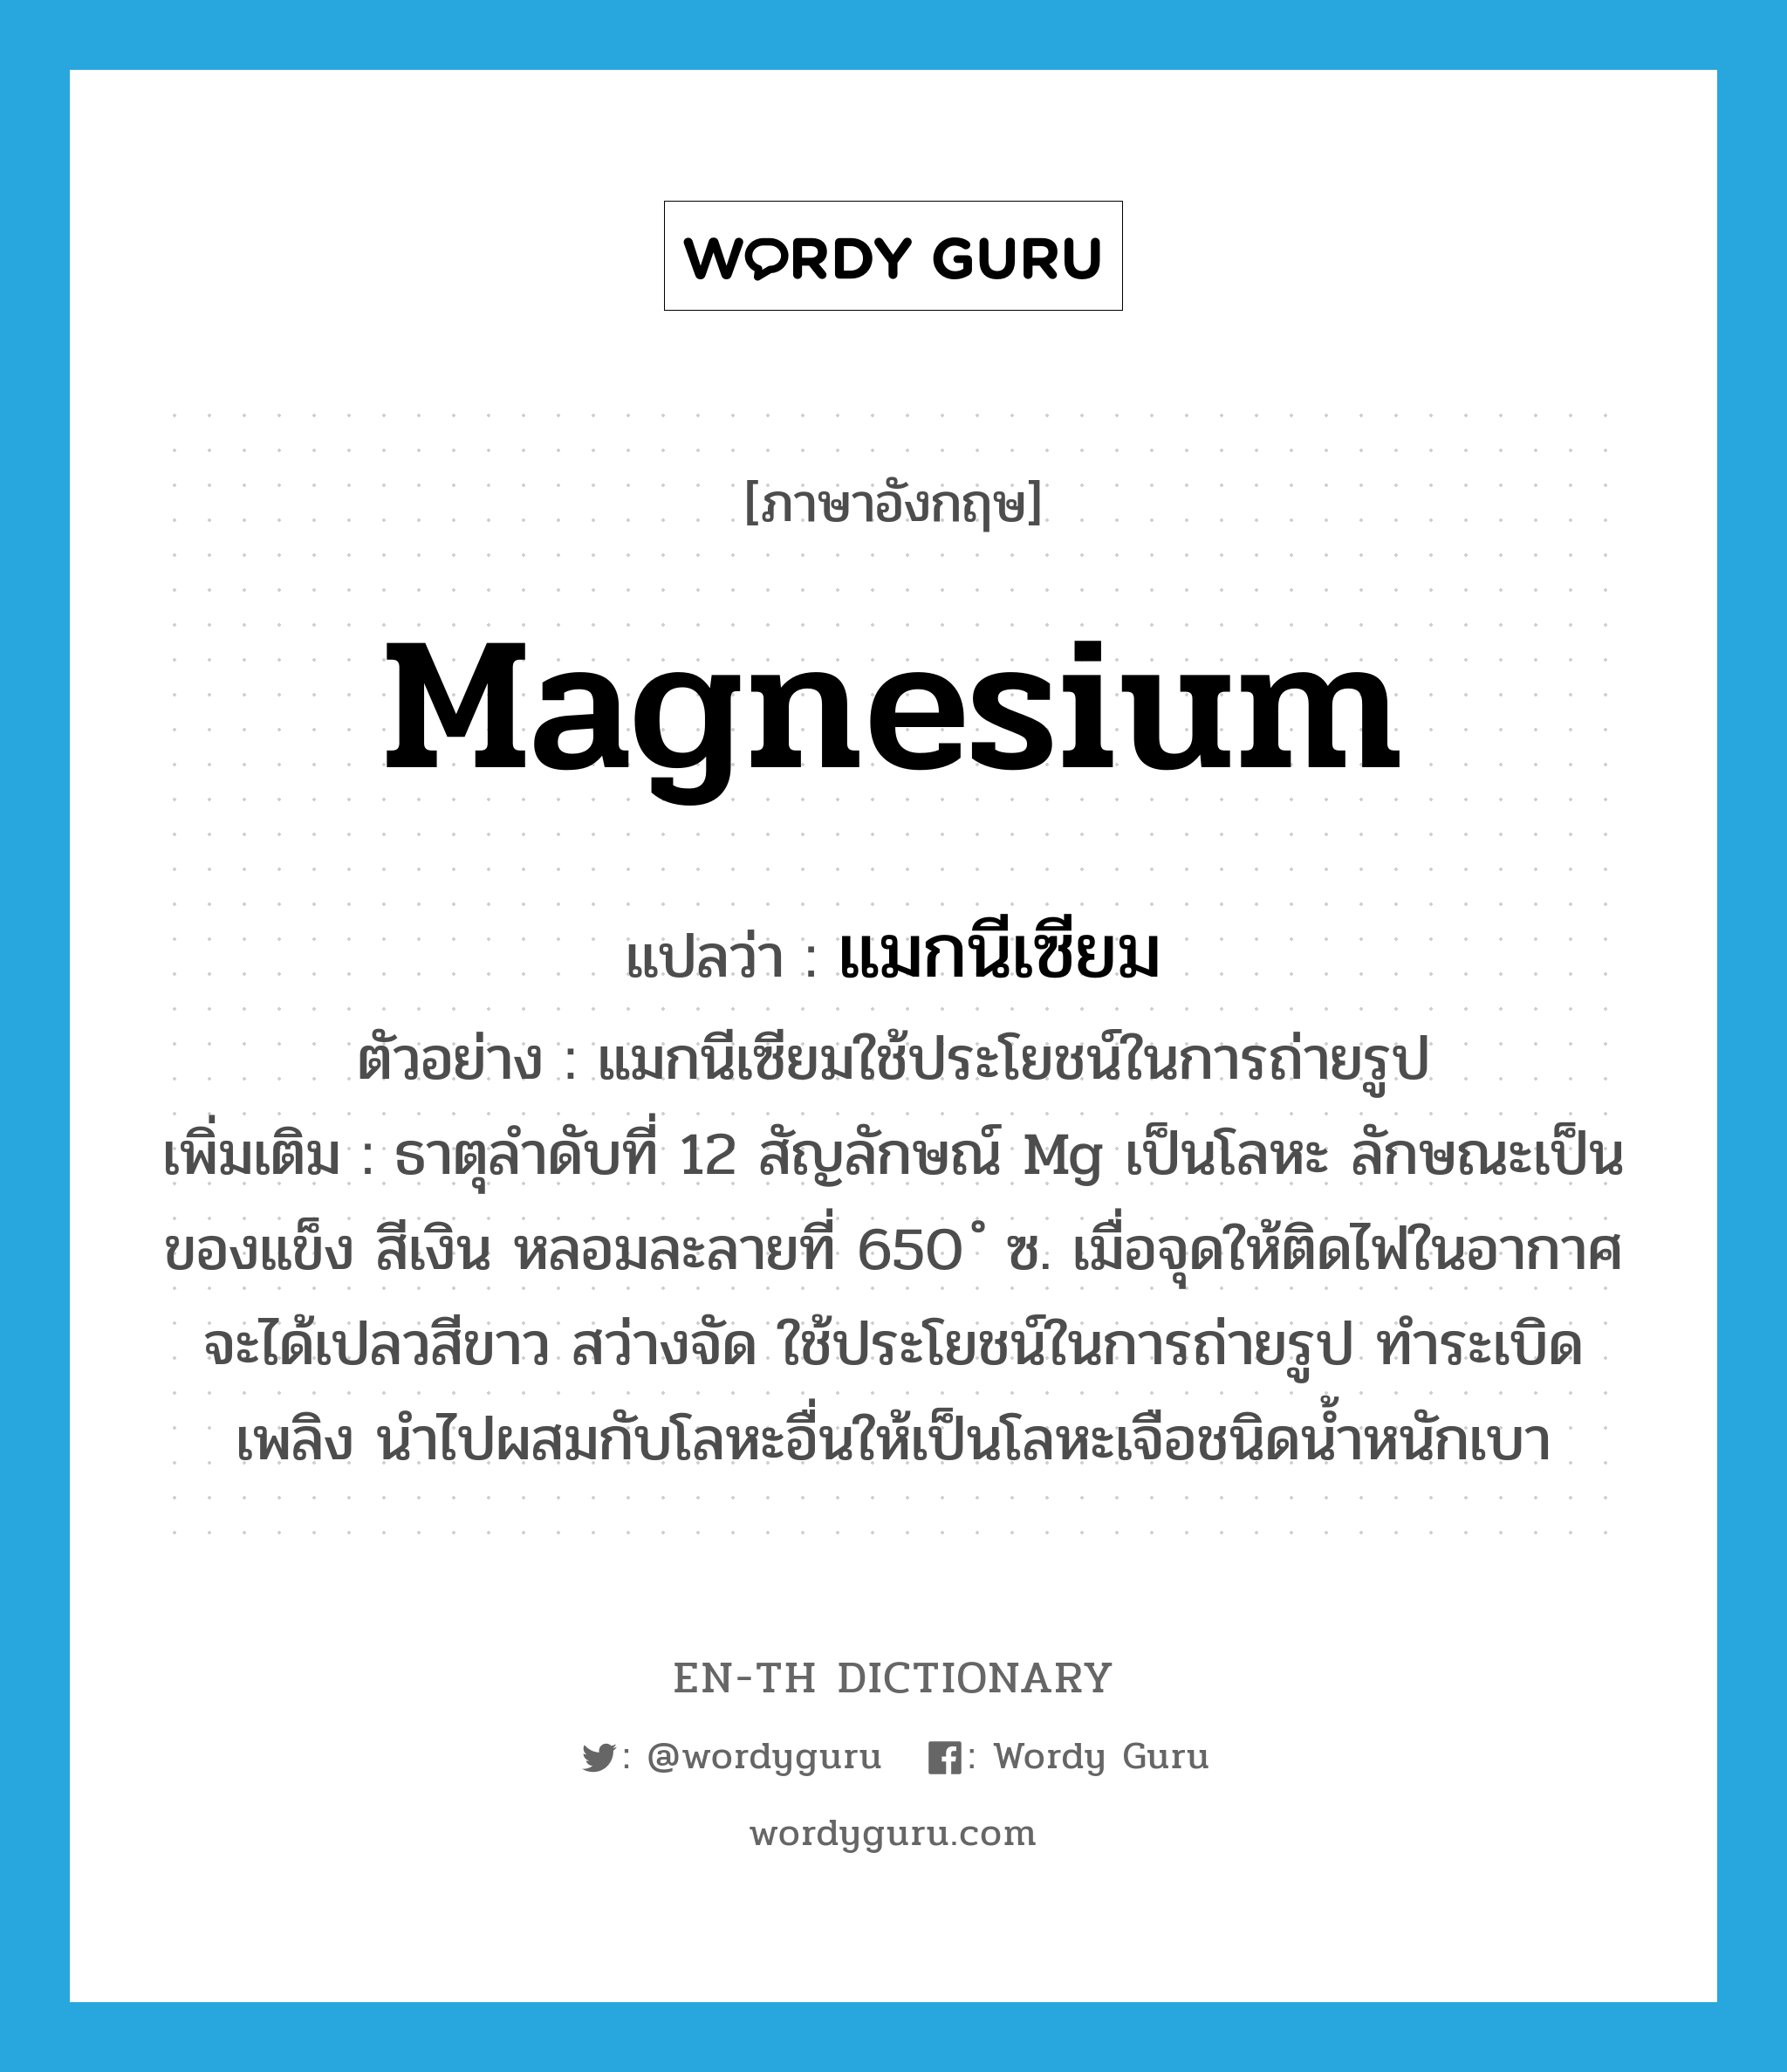 magnesium แปลว่า?, คำศัพท์ภาษาอังกฤษ magnesium แปลว่า แมกนีเซียม ประเภท N ตัวอย่าง แมกนีเซียมใช้ประโยชน์ในการถ่ายรูป เพิ่มเติม ธาตุลำดับที่ 12 สัญลักษณ์ Mg เป็นโลหะ ลักษณะเป็นของแข็ง สีเงิน หลอมละลายที่ 650 ํ ซ. เมื่อจุดให้ติดไฟในอากาศจะได้เปลวสีขาว สว่างจัด ใช้ประโยชน์ในการถ่ายรูป ทำระเบิดเพลิง นำไปผสมกับโลหะอื่นให้เป็นโลหะเจือชนิดน้ำหนักเบา หมวด N